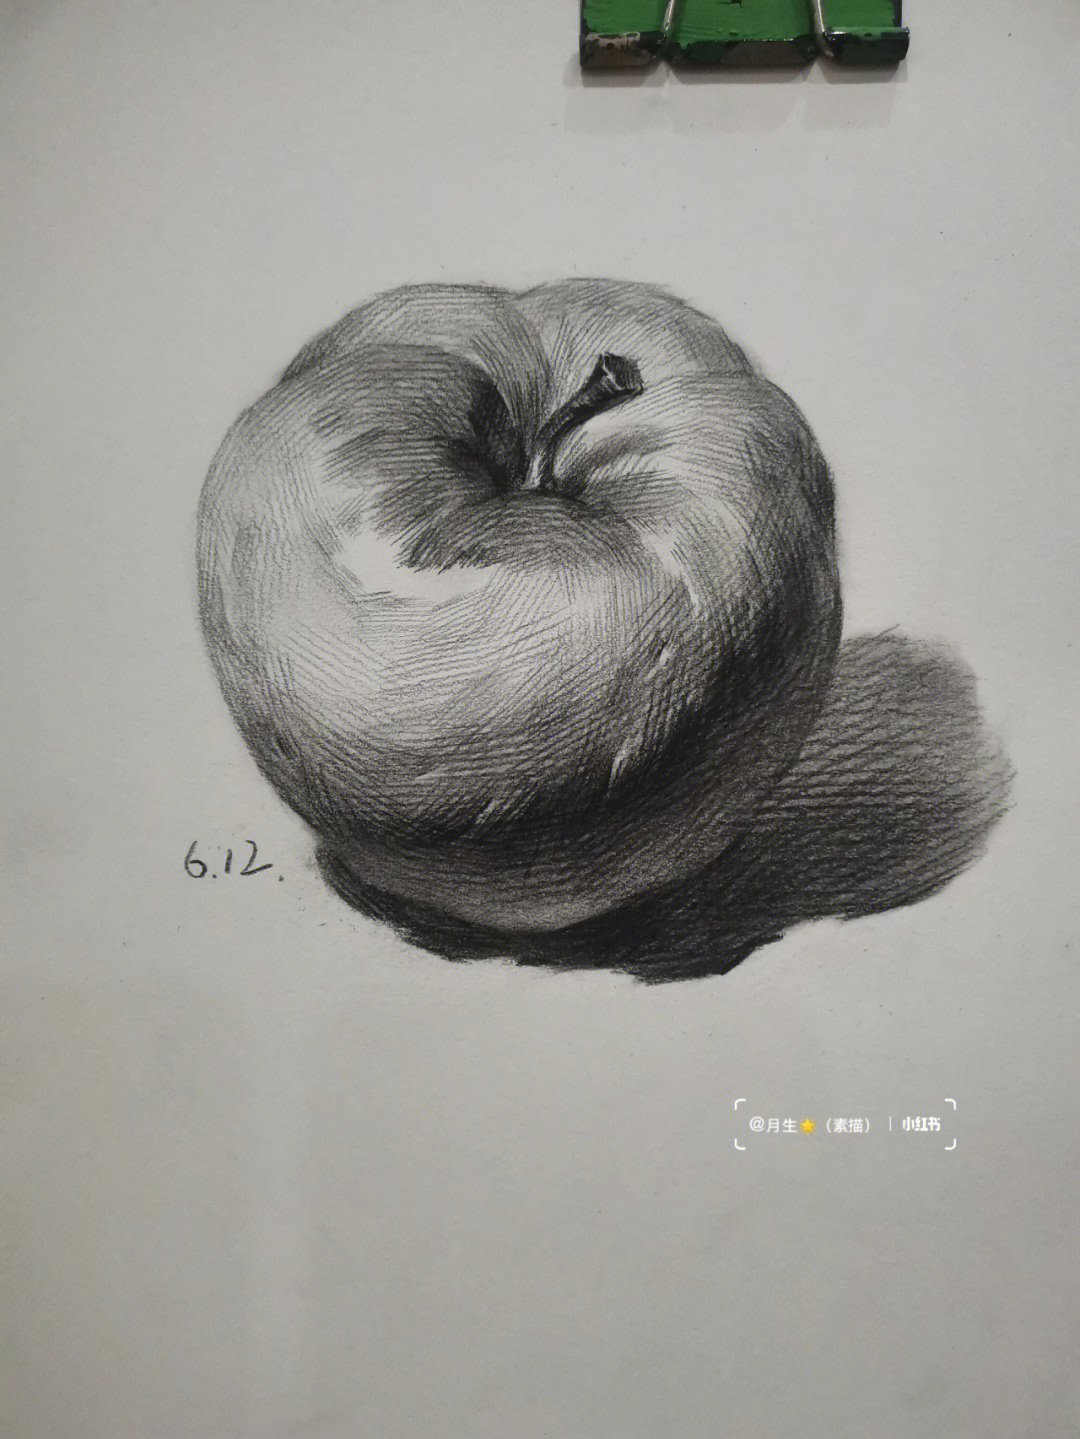 素描静物苹果画法步骤图片